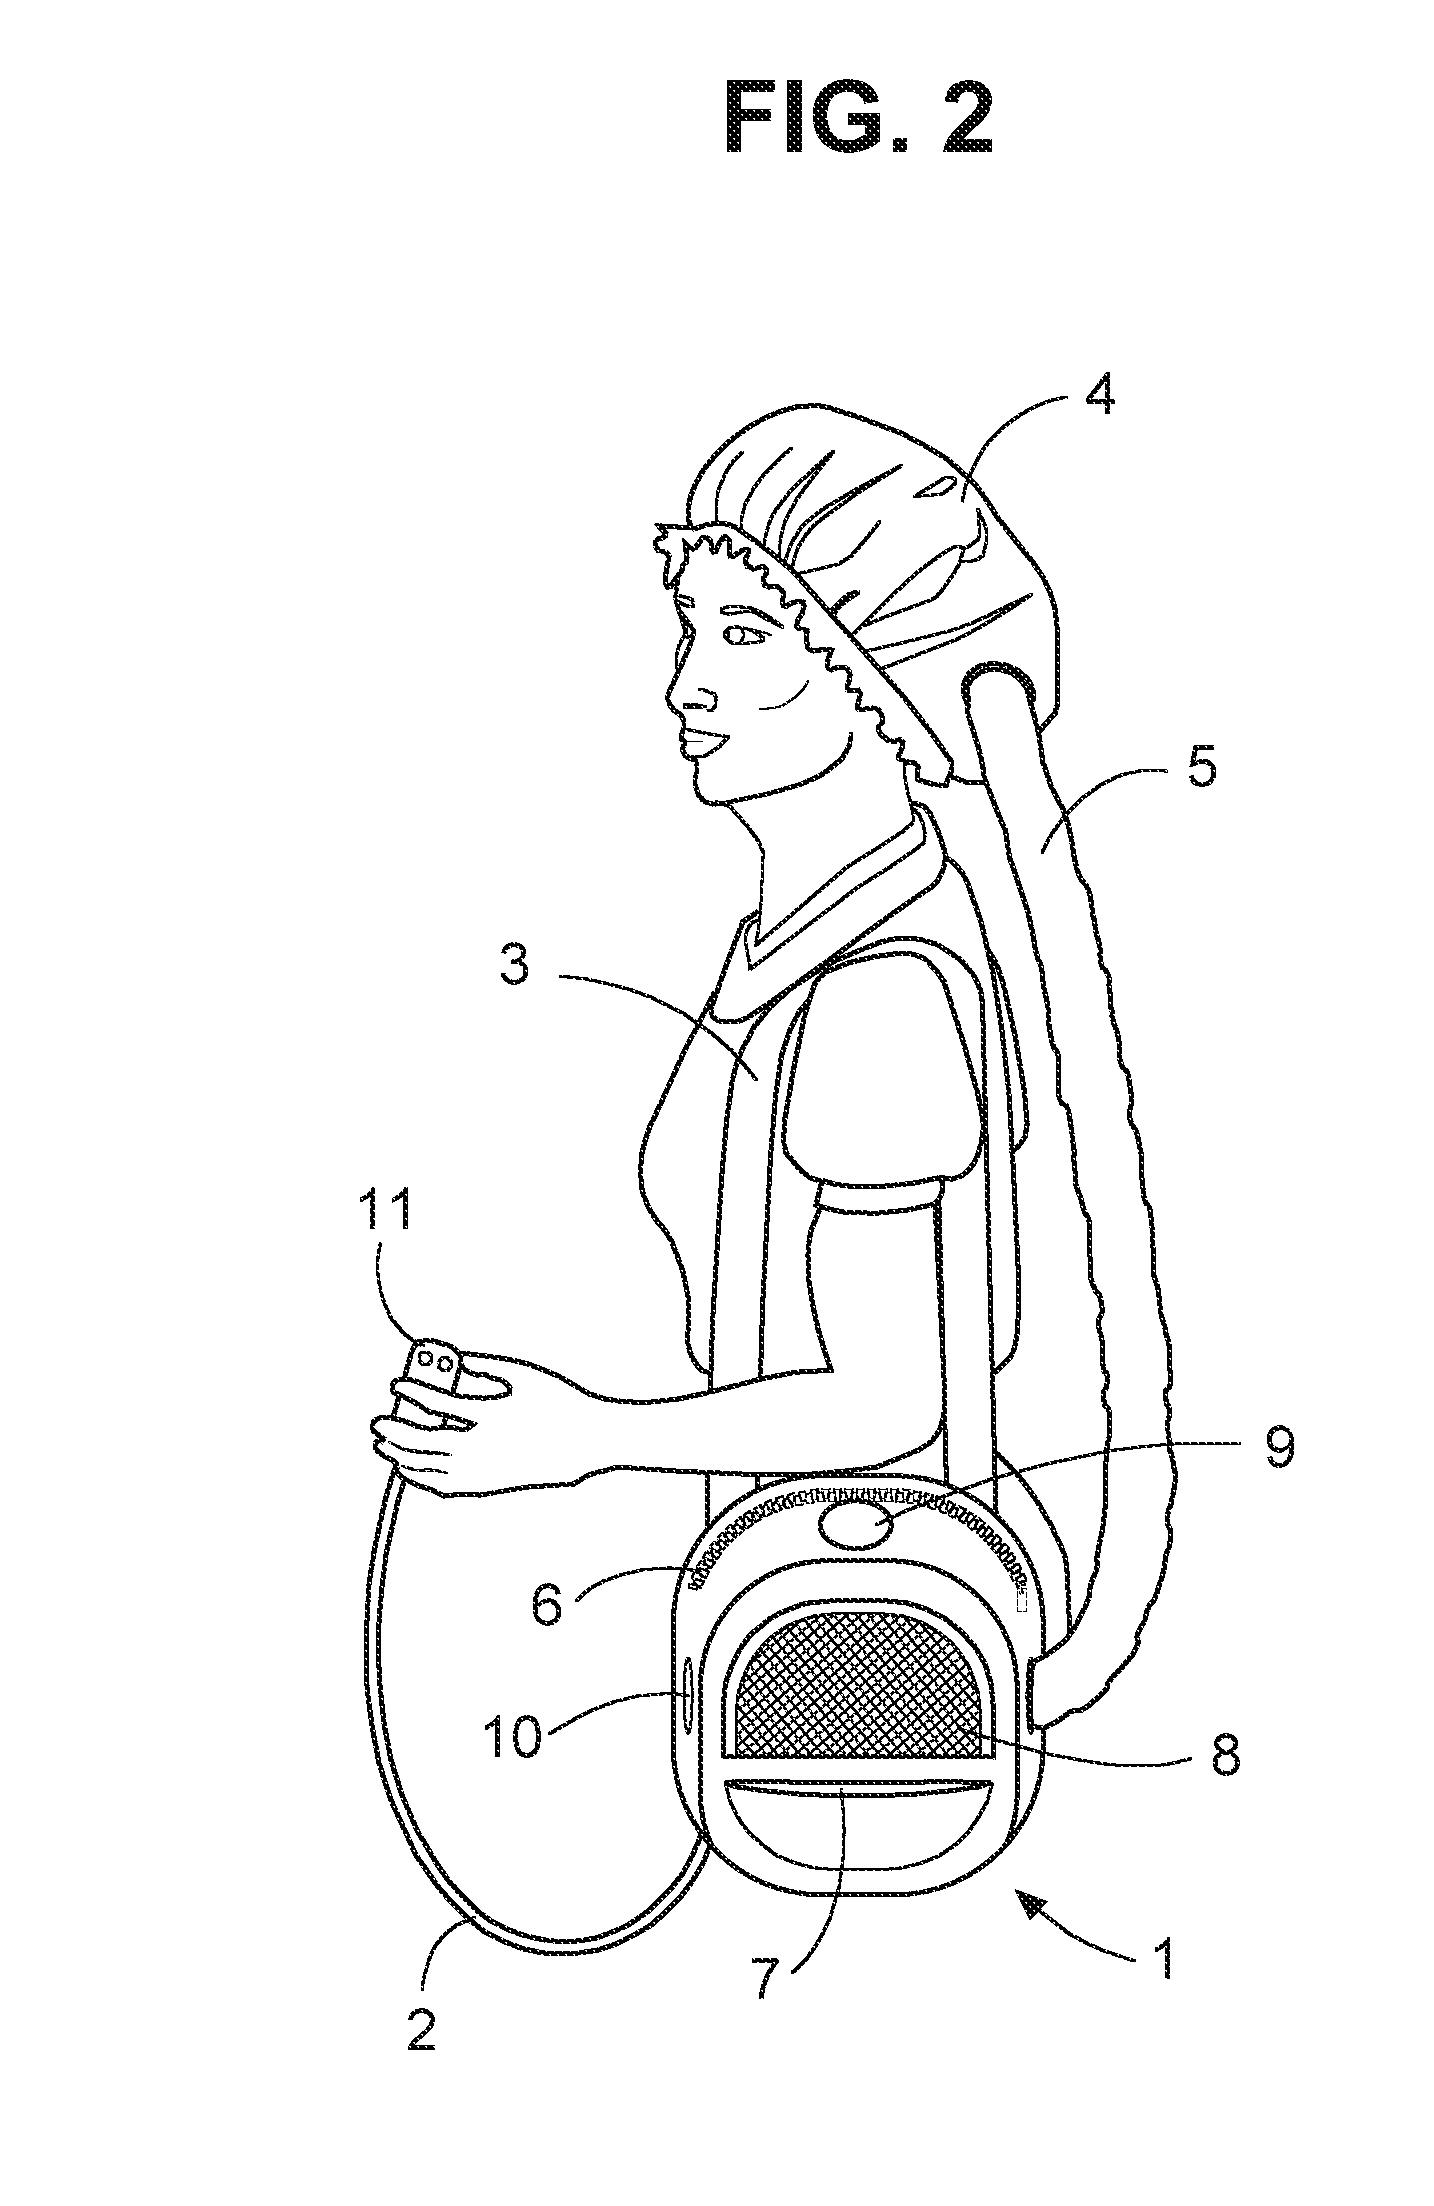 Portable hair dryer system